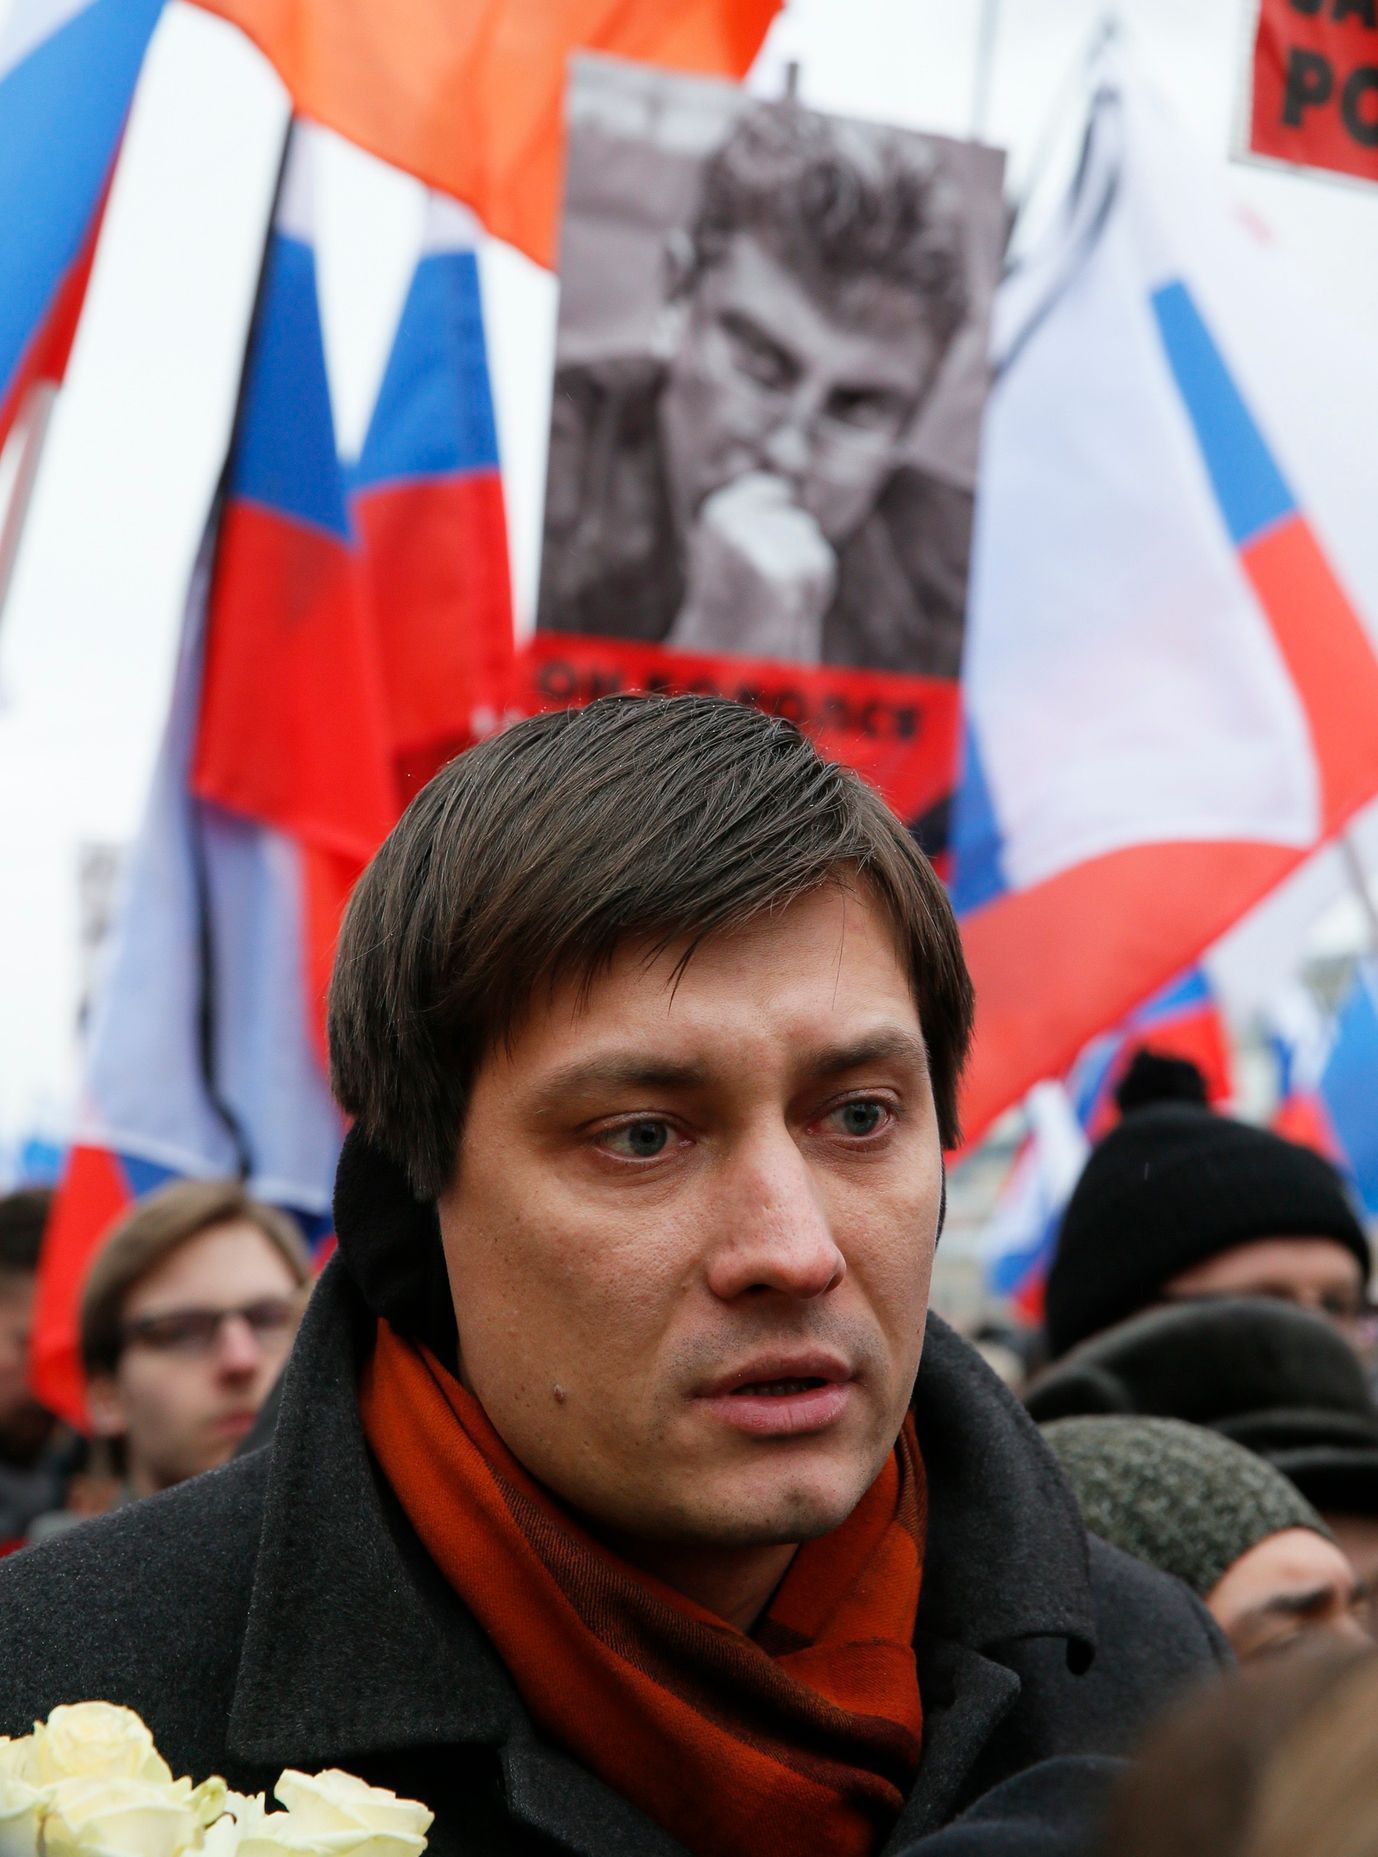 Ruský poslanec Gudkov na pochodu v Moskvě.